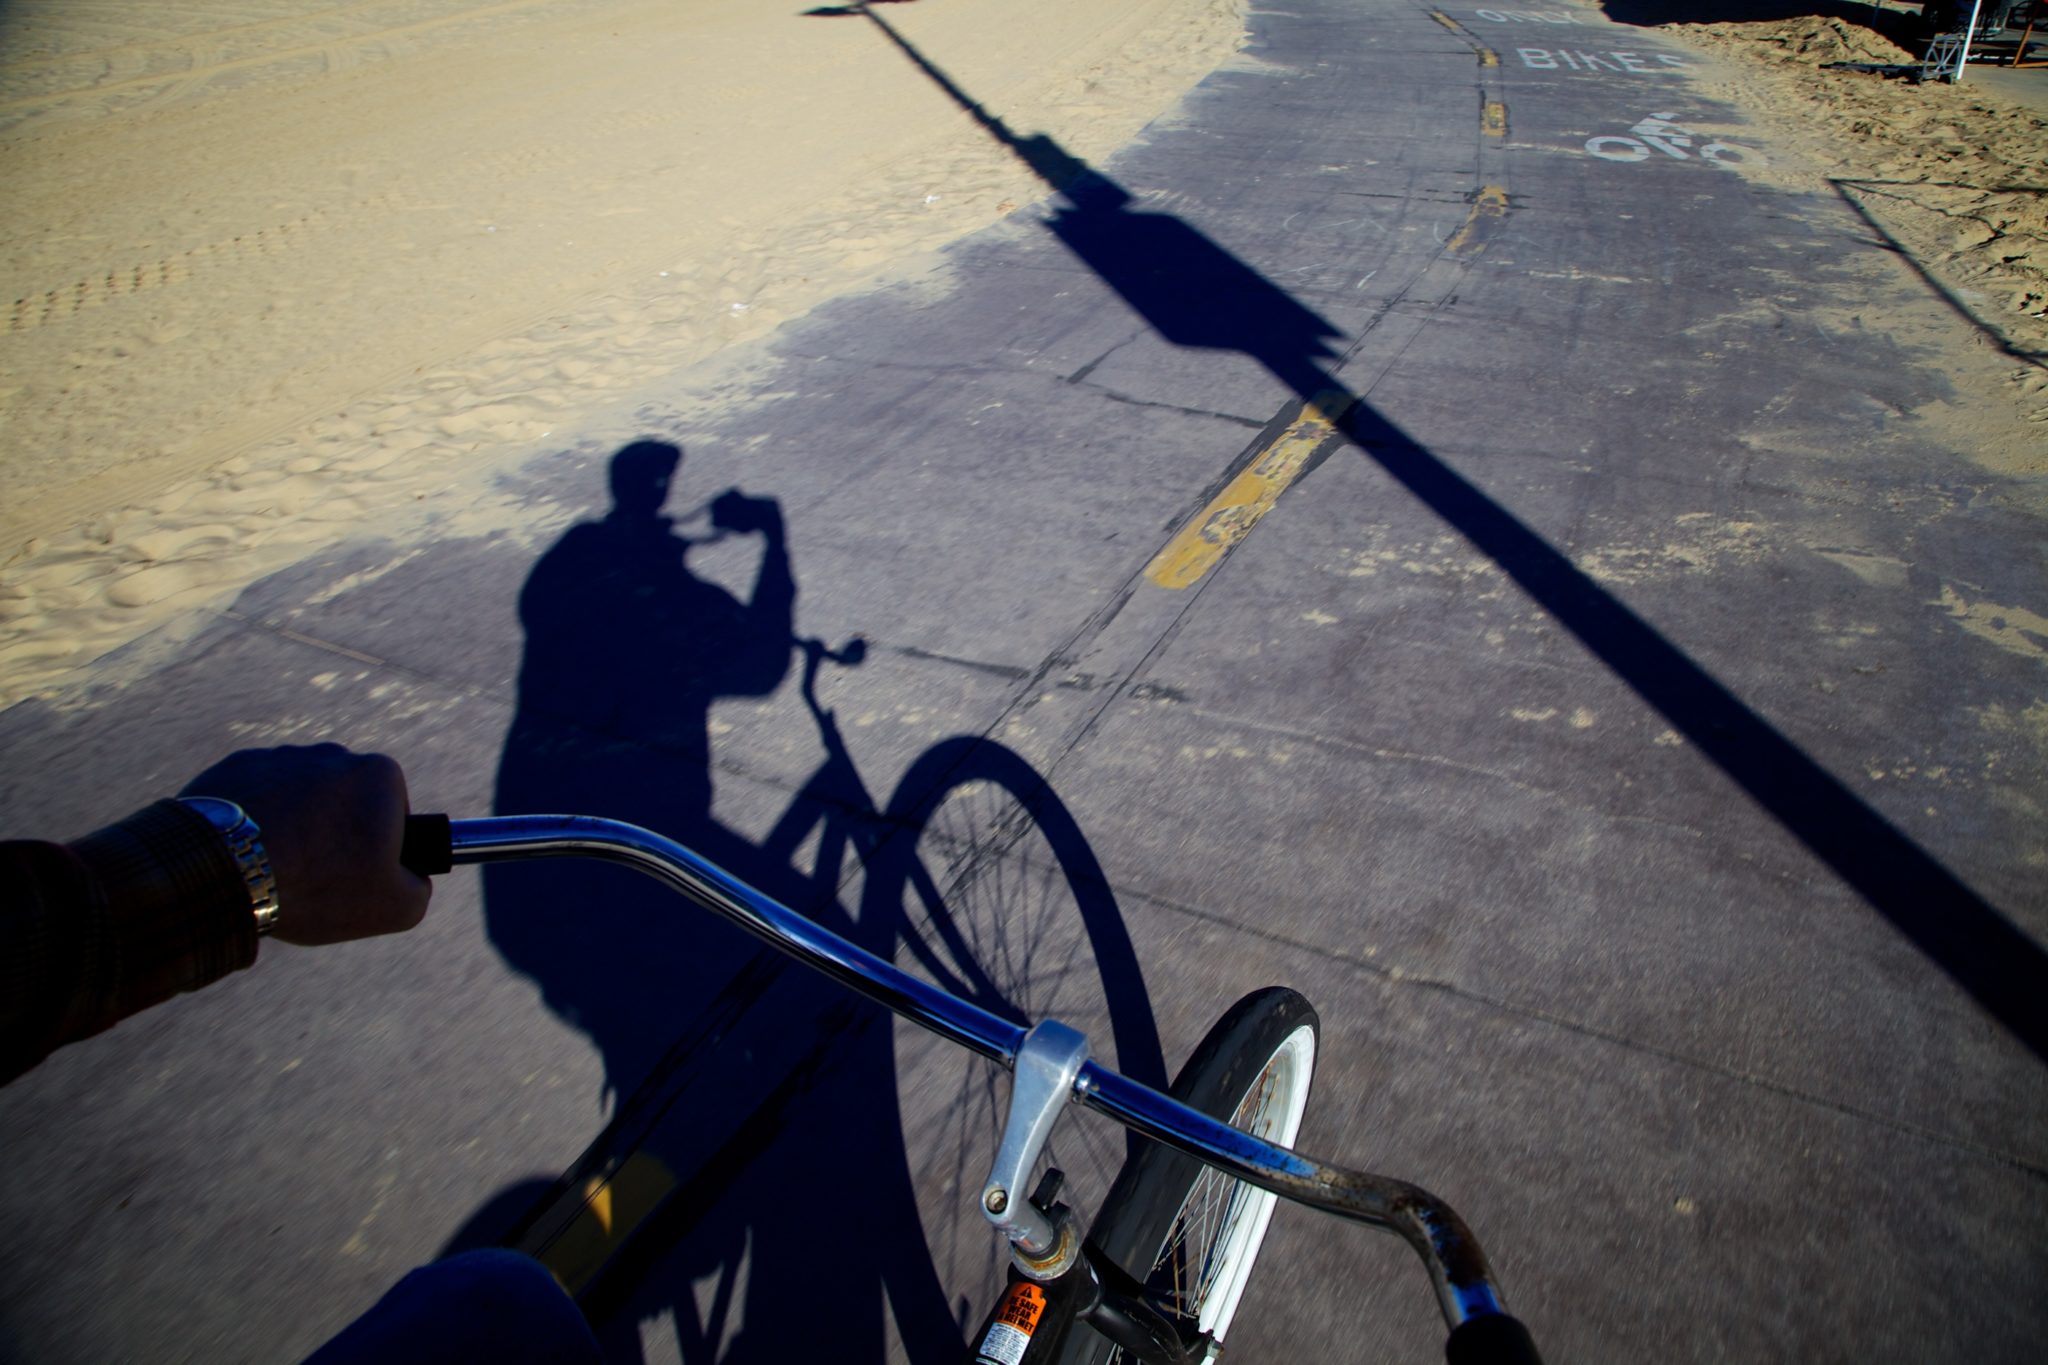 Bike riding at Santa Monica beach